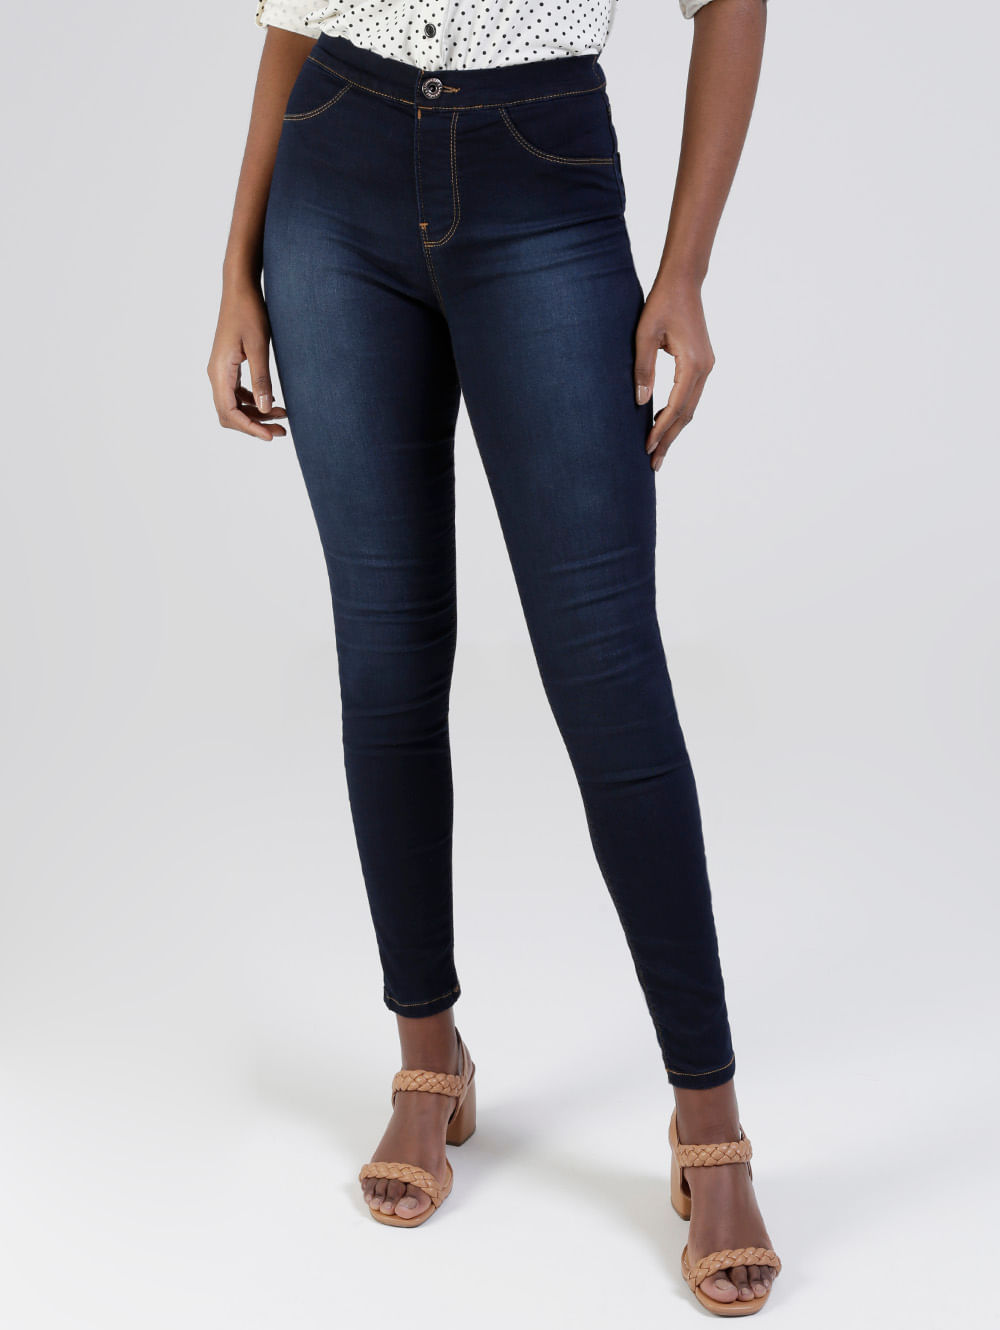 Calça jeans feminina alta qualidade top #la - R$ 199.90, cor Azul (skinny)  #39863, compre agora